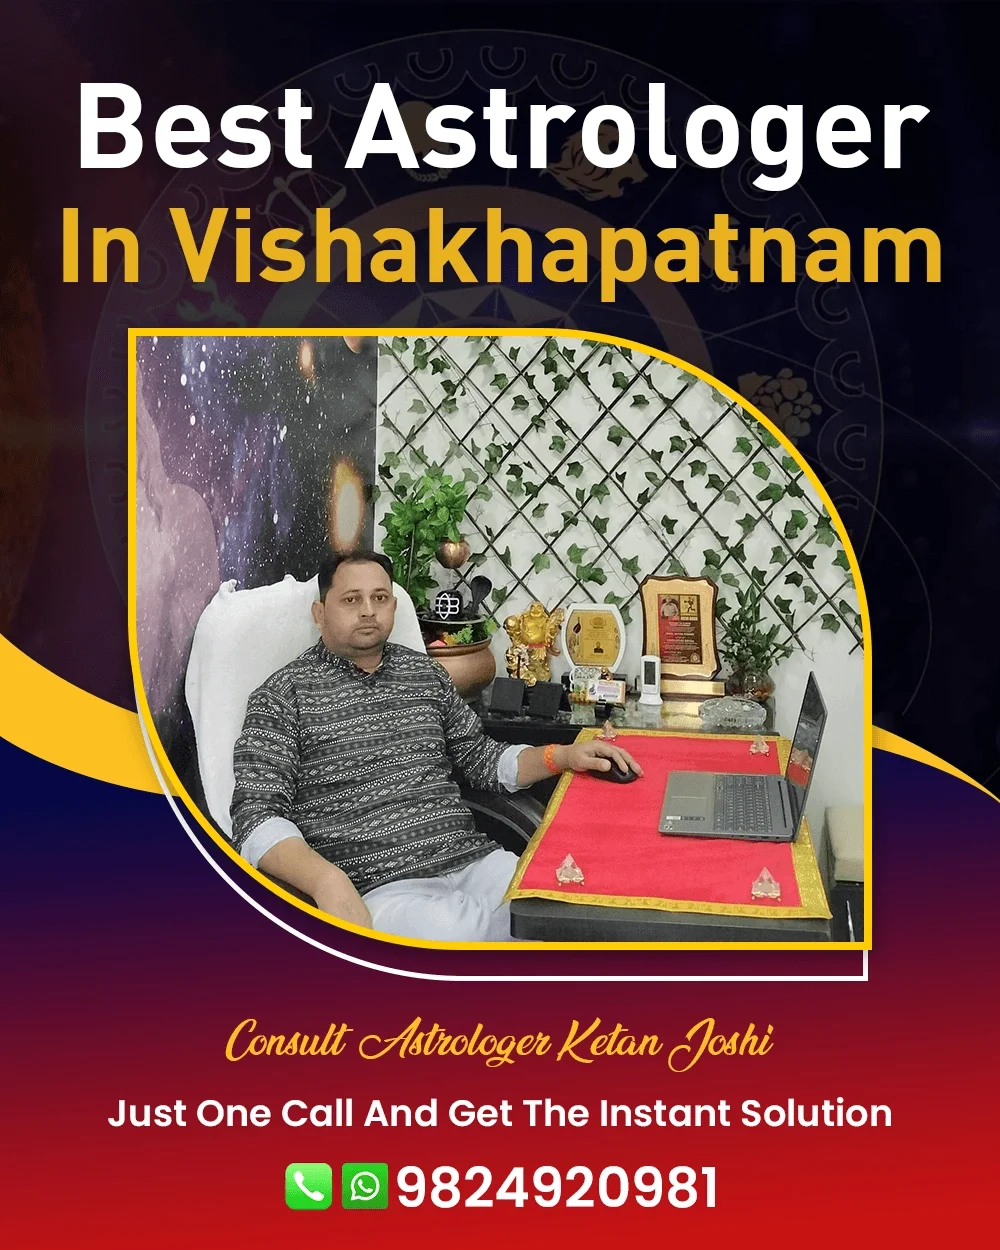 Best Astrologer In Vishakhapatnam